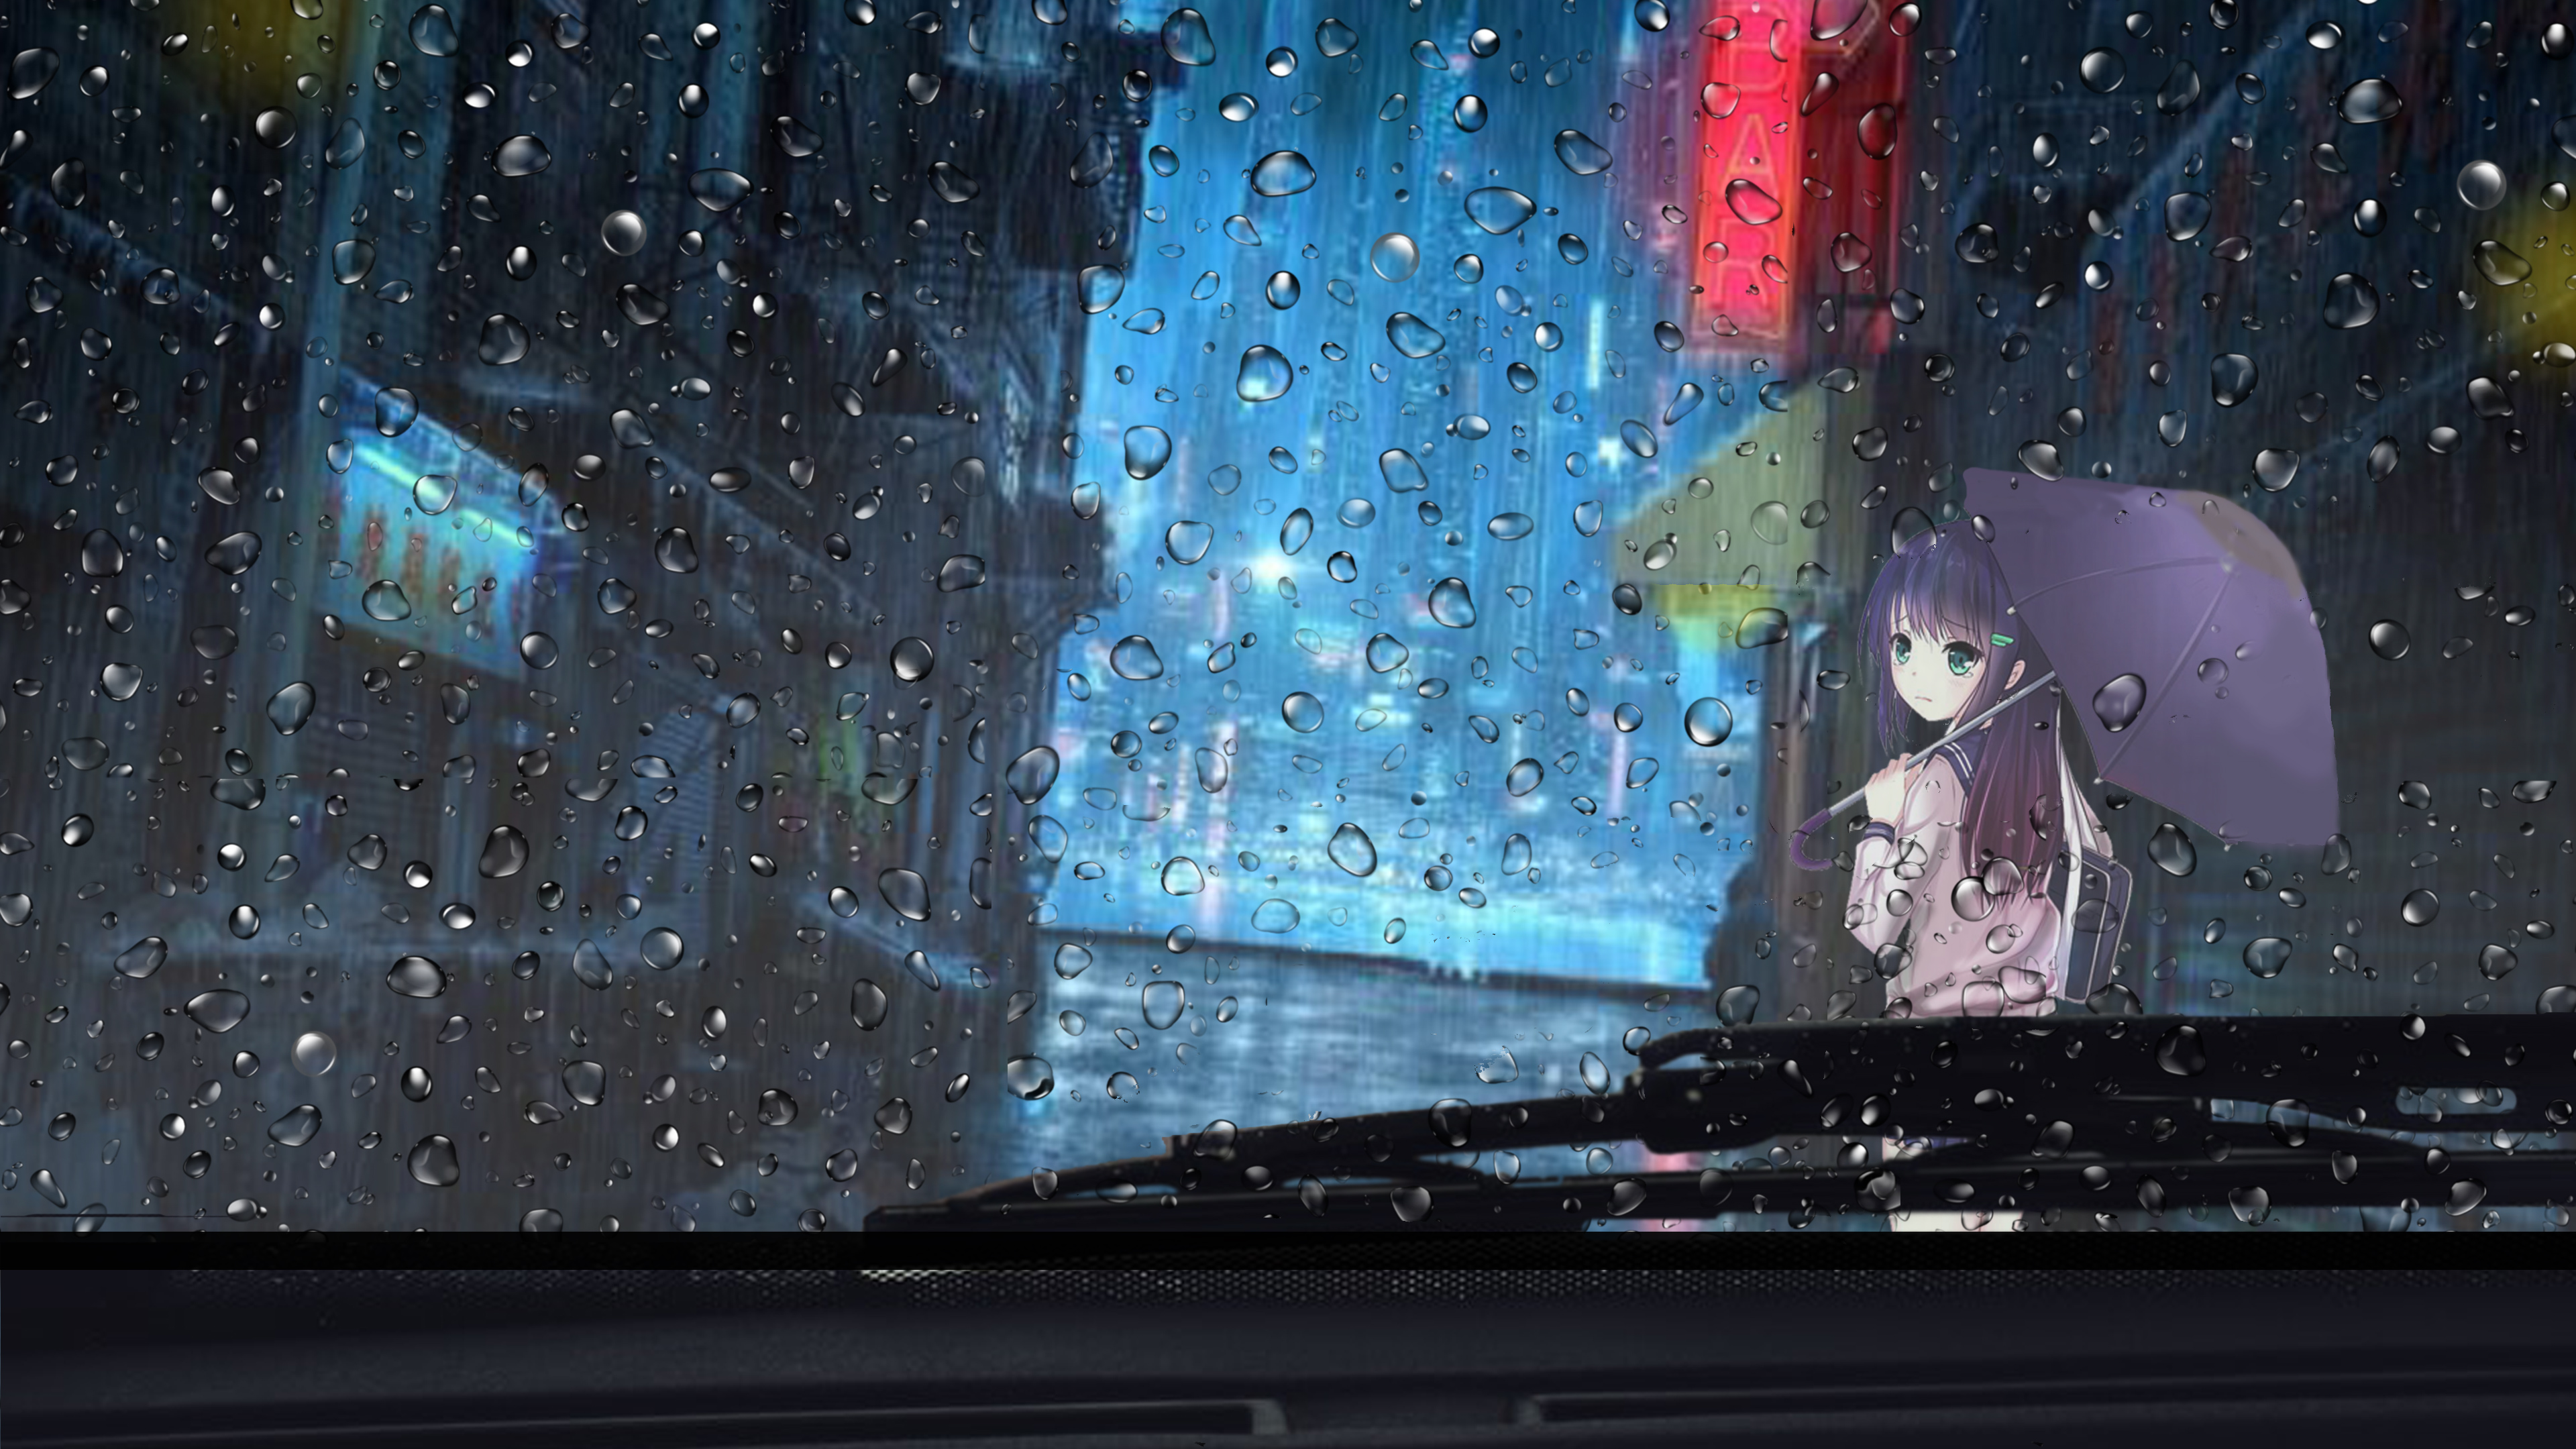 wallpaper for desktop, laptop | bc90-rainy-day-anime -paint-girl-art-illustration-flare